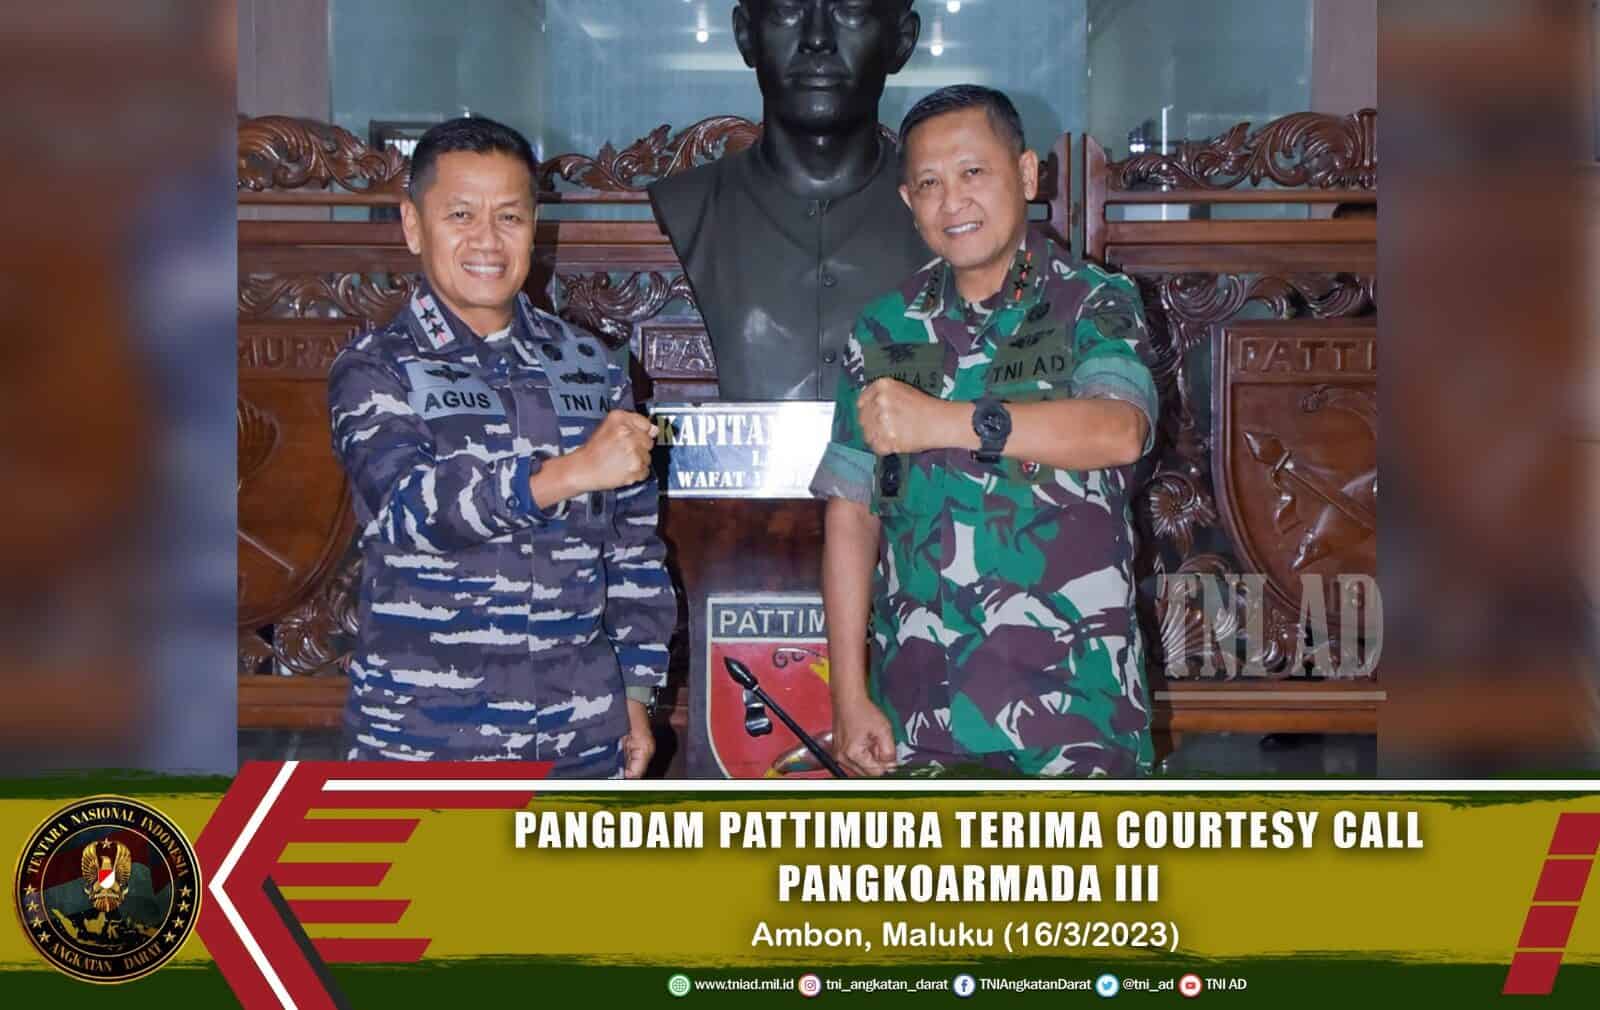 Pangdam Pattimura Terima Courtesy Call Pangkoarmada III